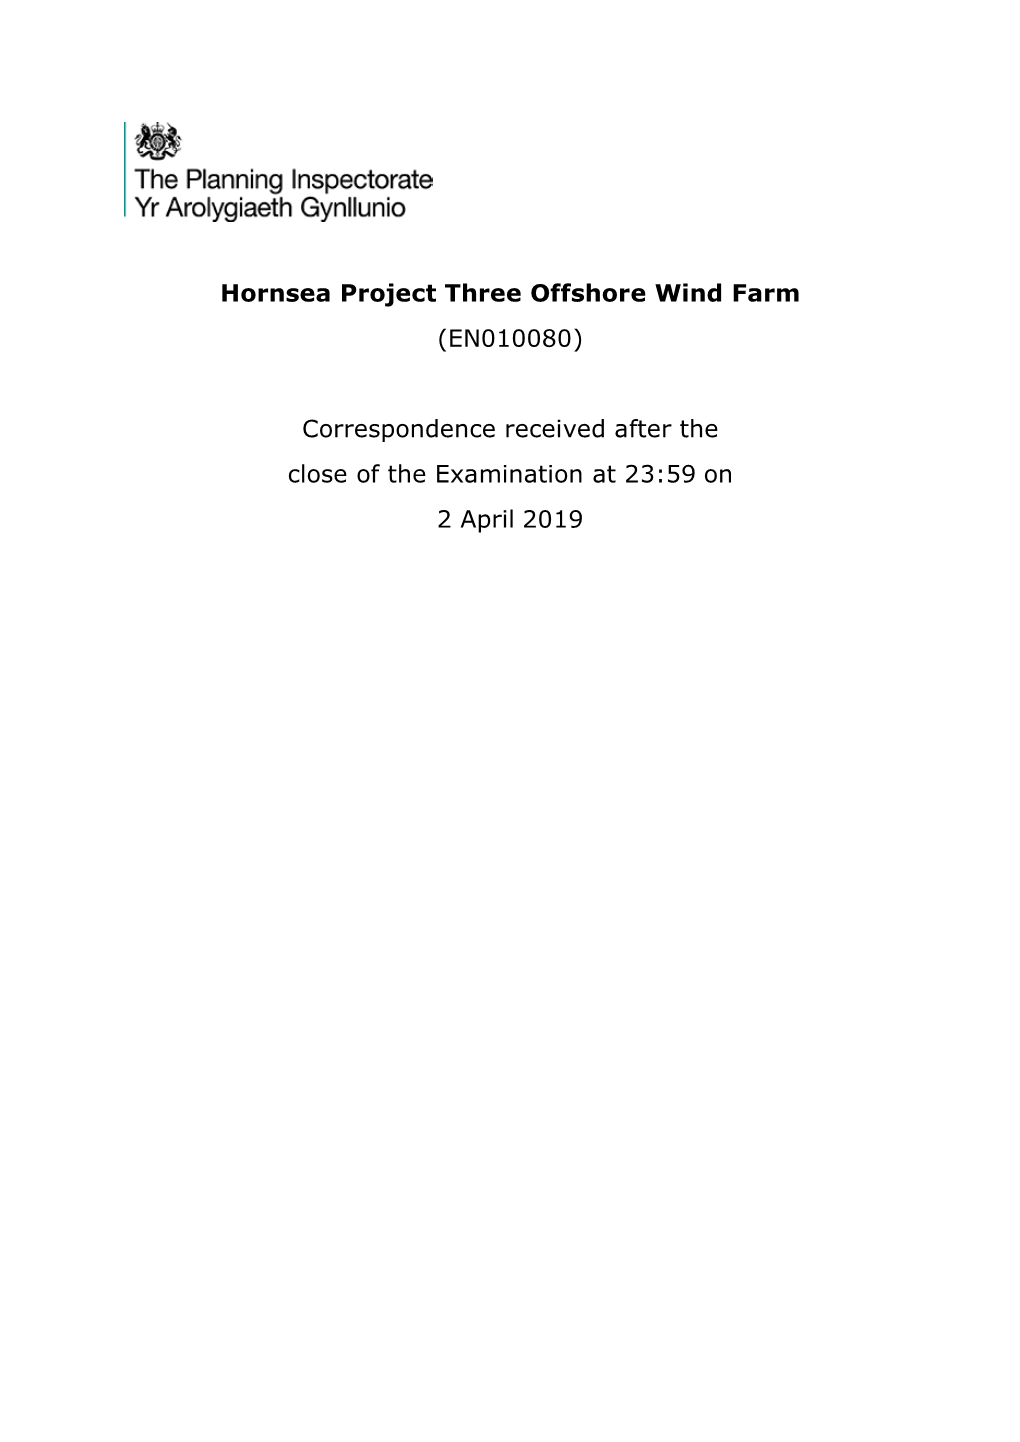 Hornsea Project Three Offshore Wind Farm (EN010080)